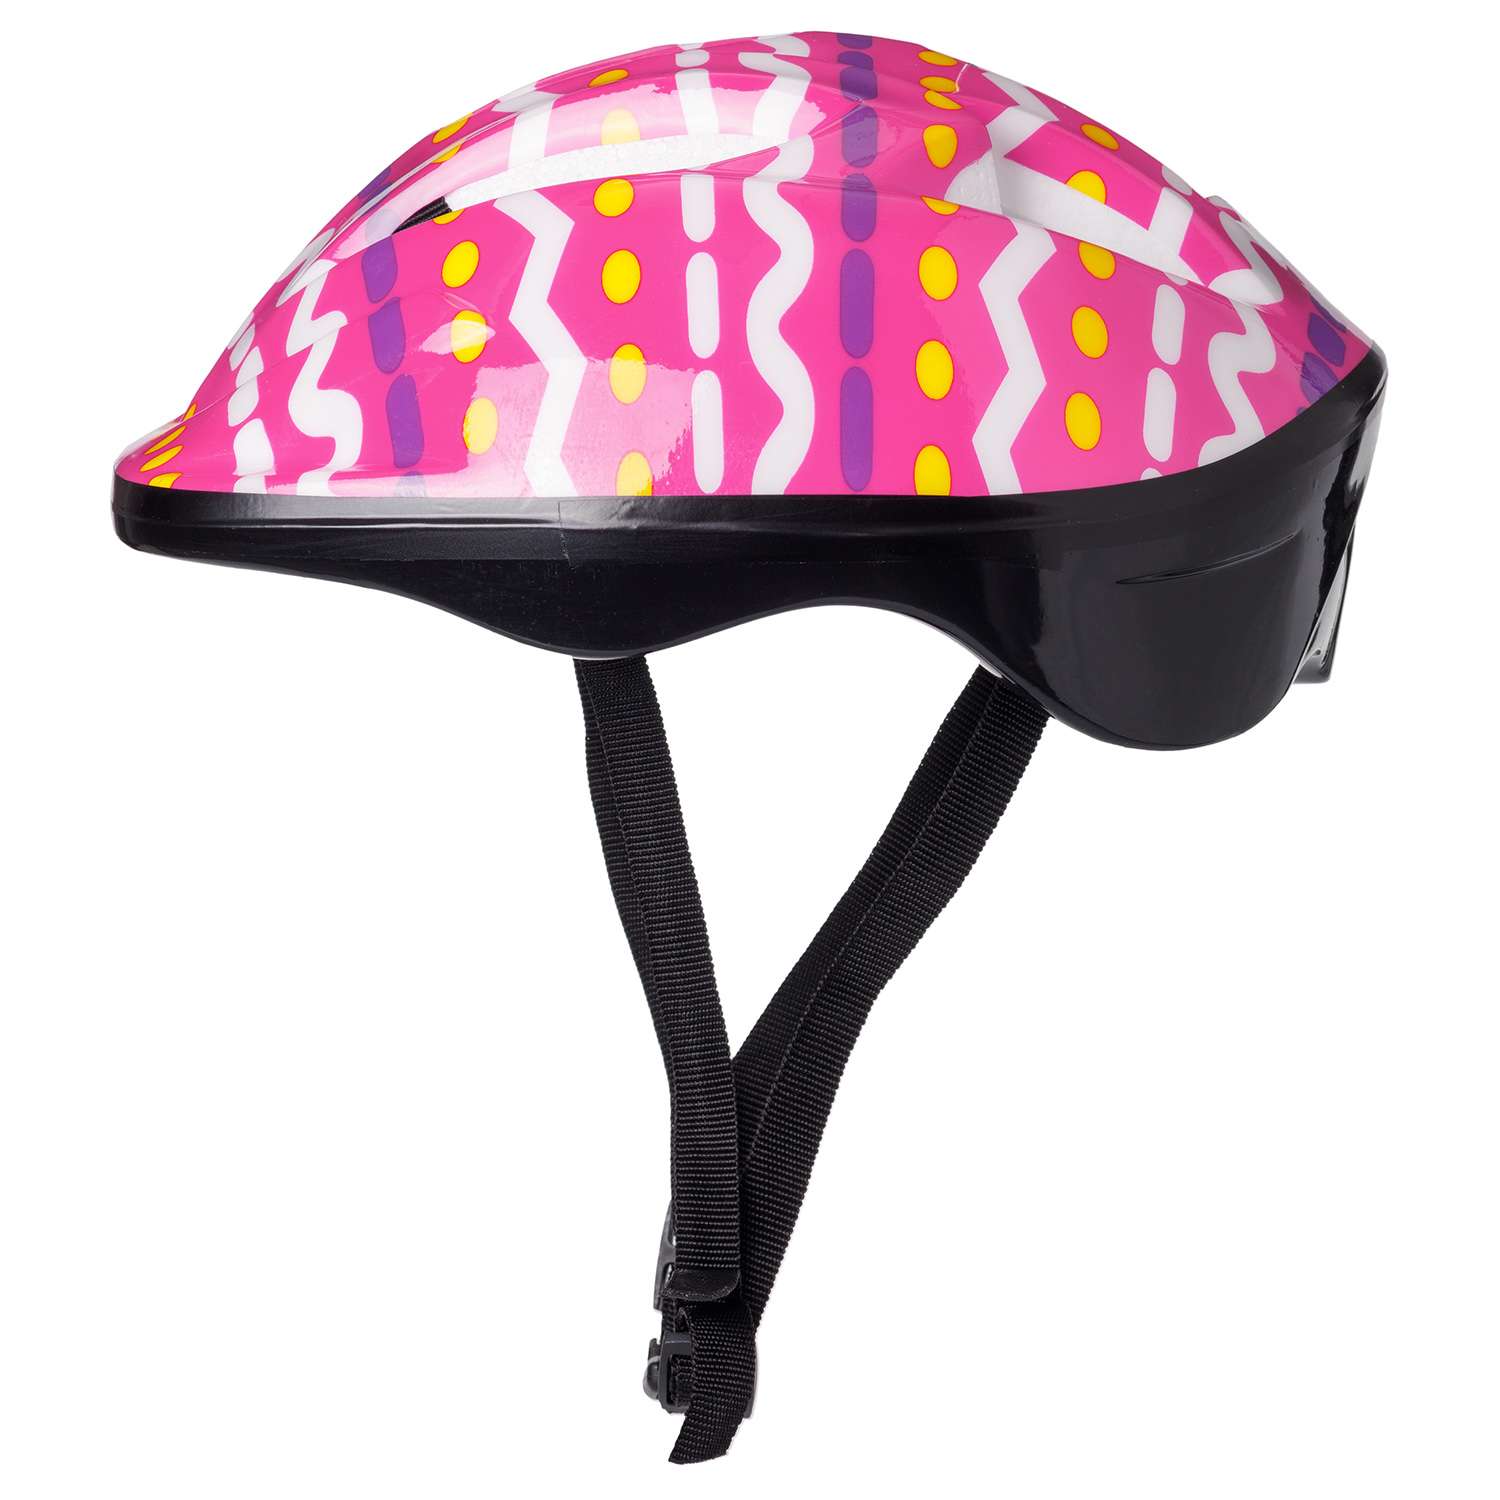 Защита Шлем BABY STYLE для роликовых коньков розовый принт обхват 57 см - фото 3